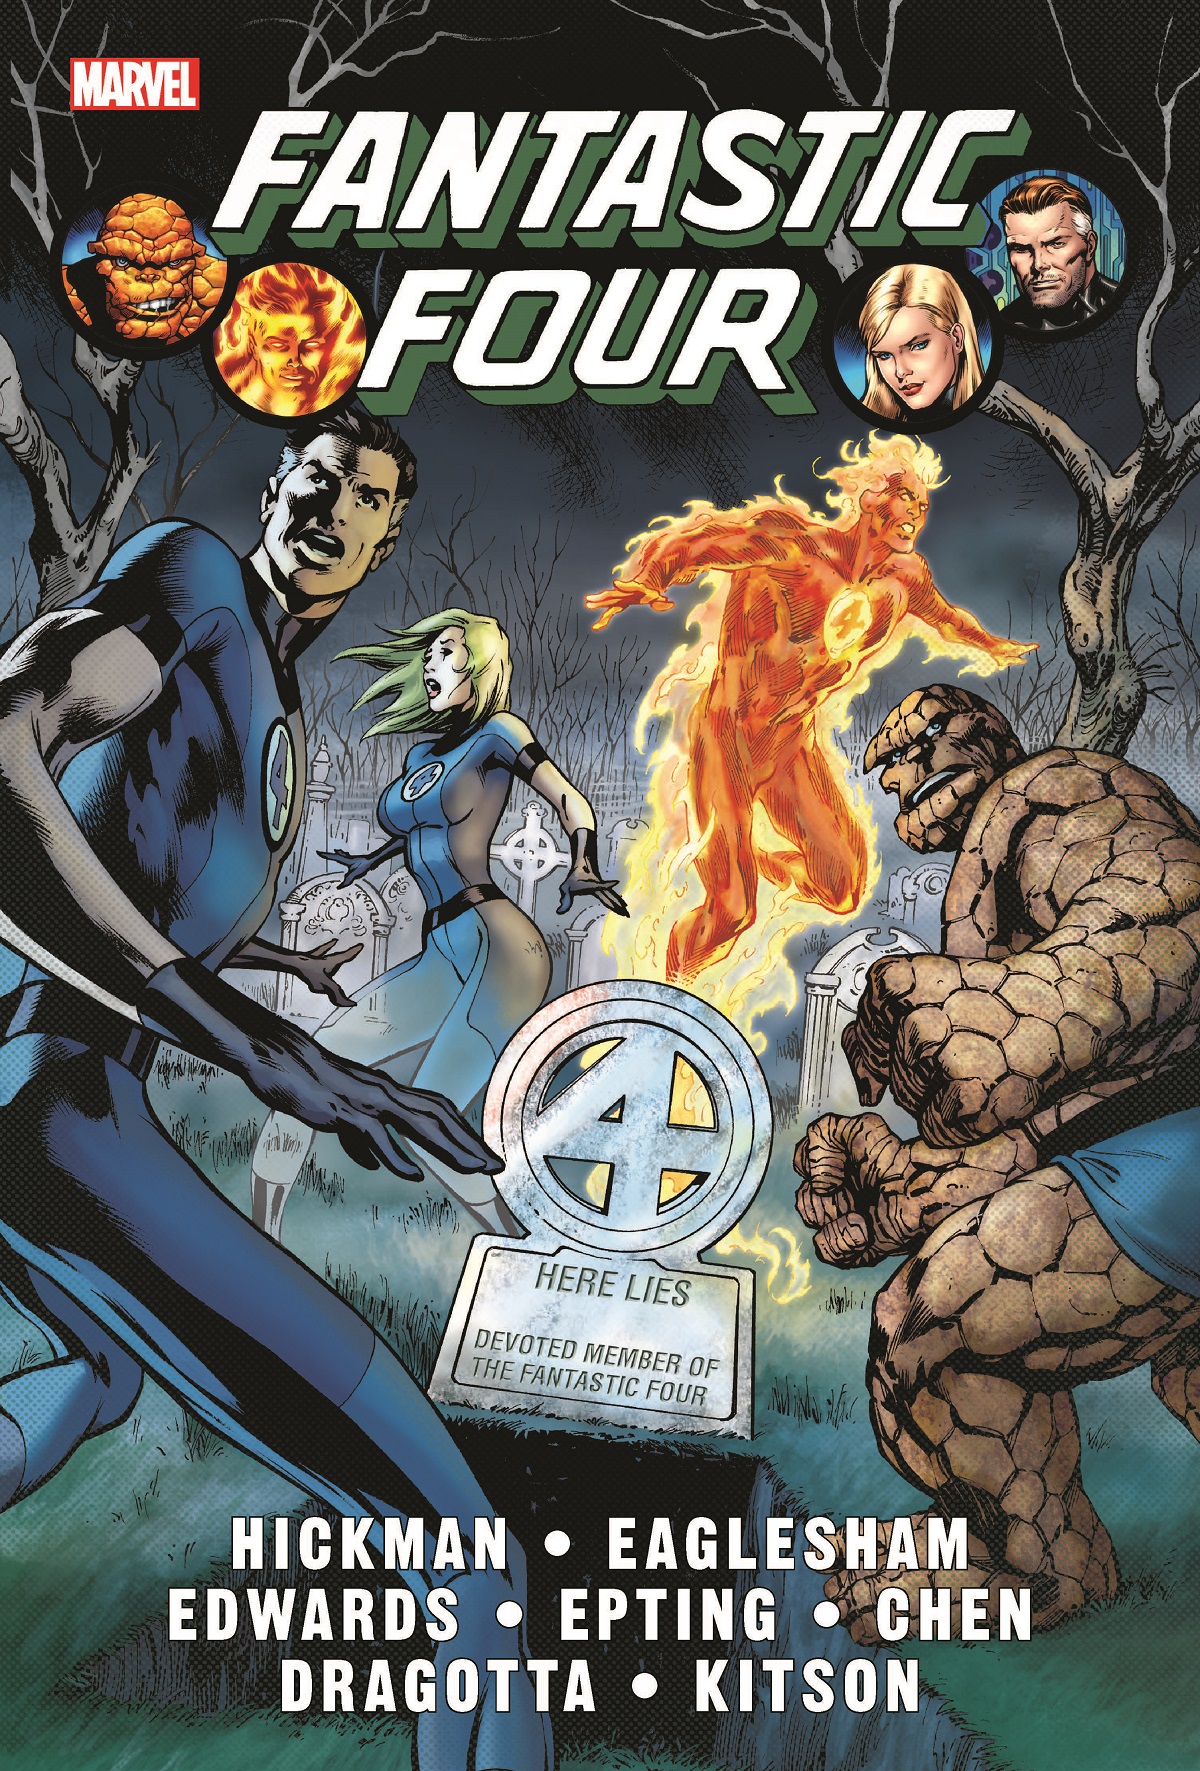 Fantastic Four Hickman Omnibus Hardcover Volume 1 Davis 1st Issue Cover